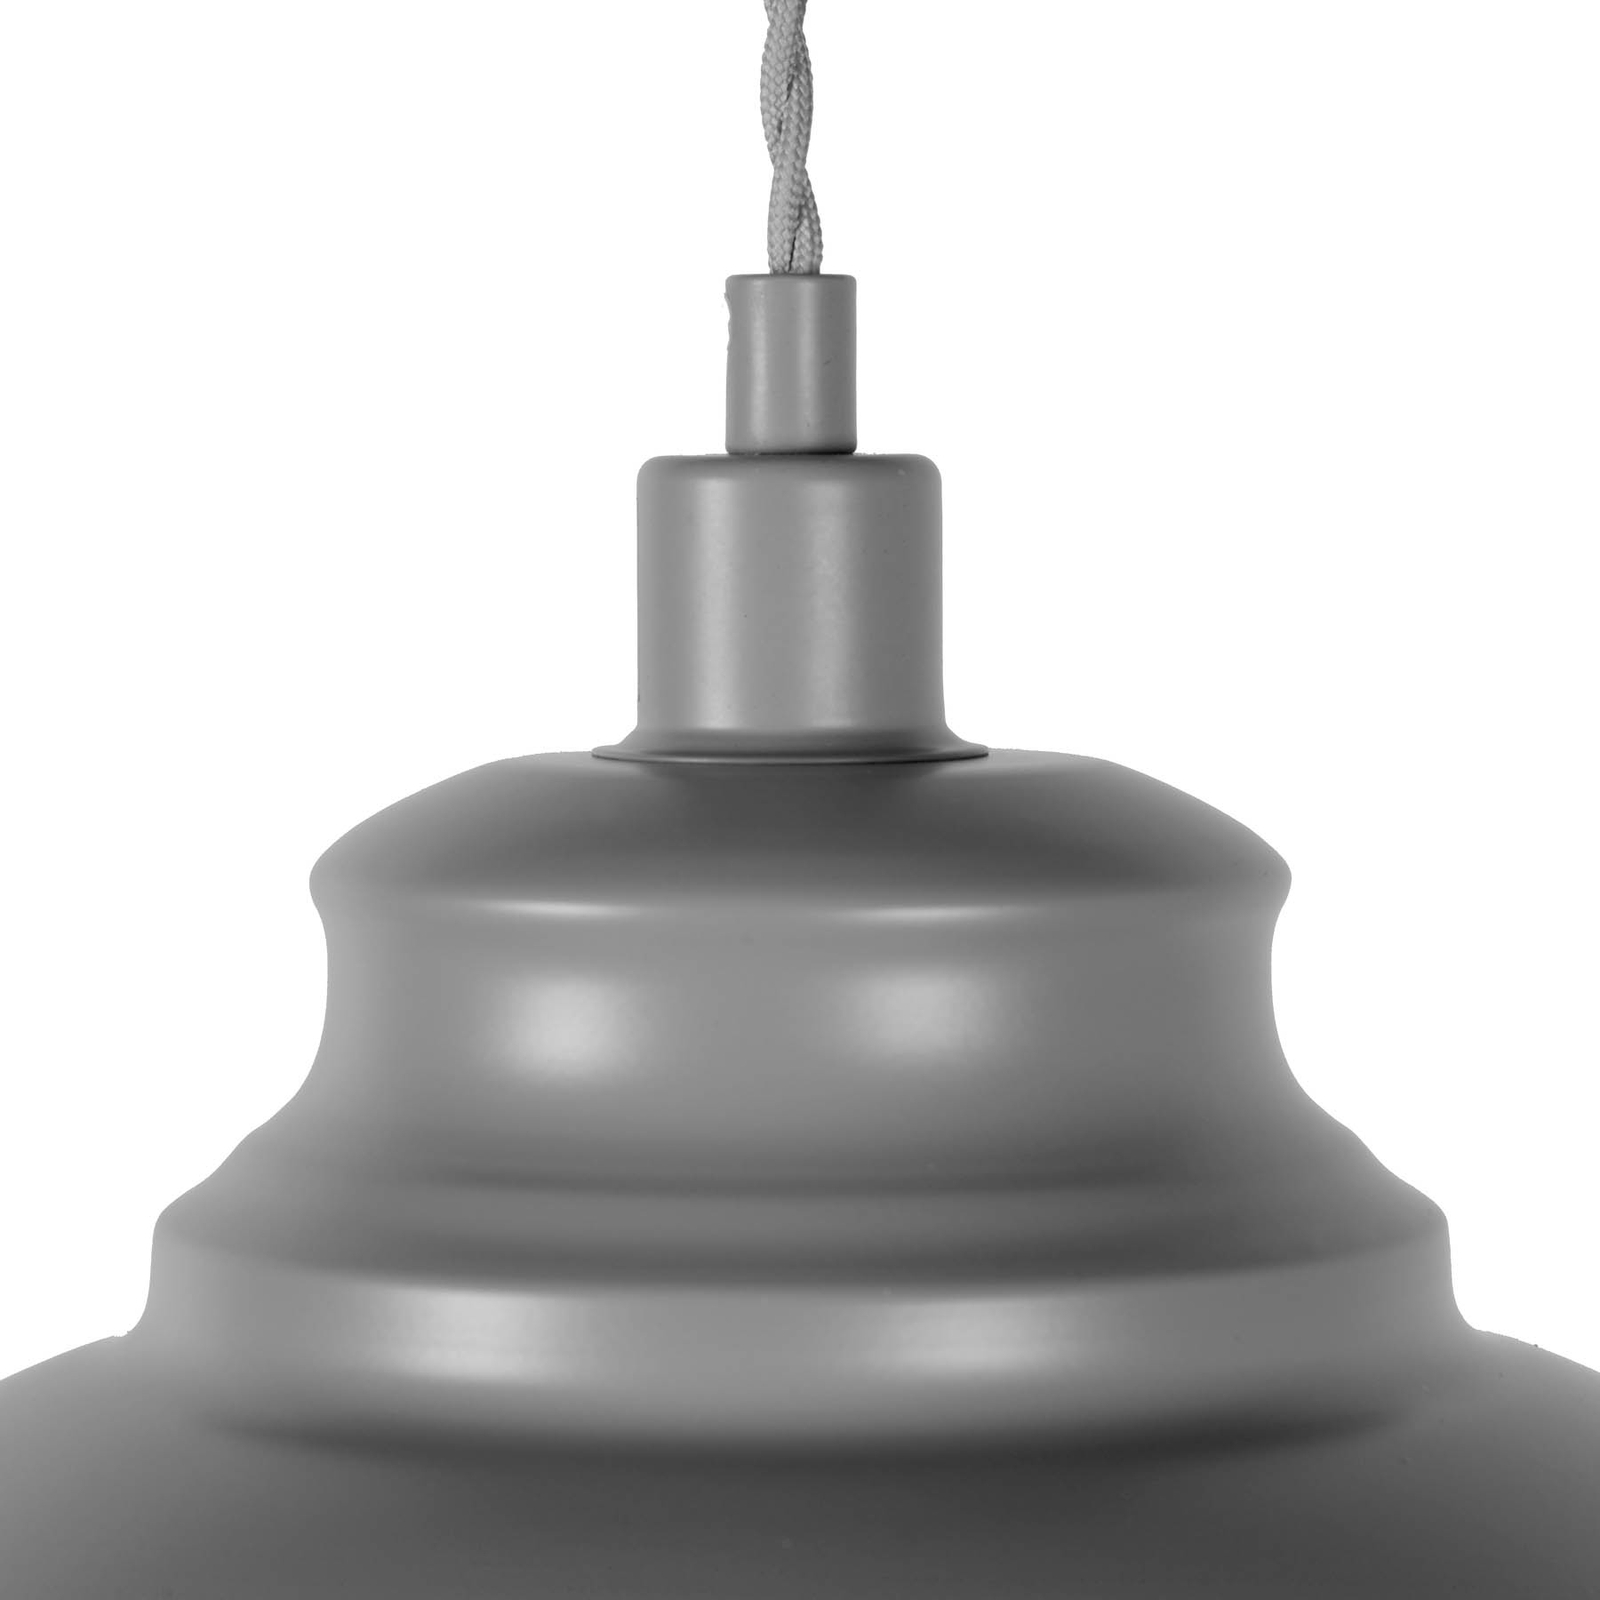 Kovinsko viseče svetilo Isla v sivi barvi